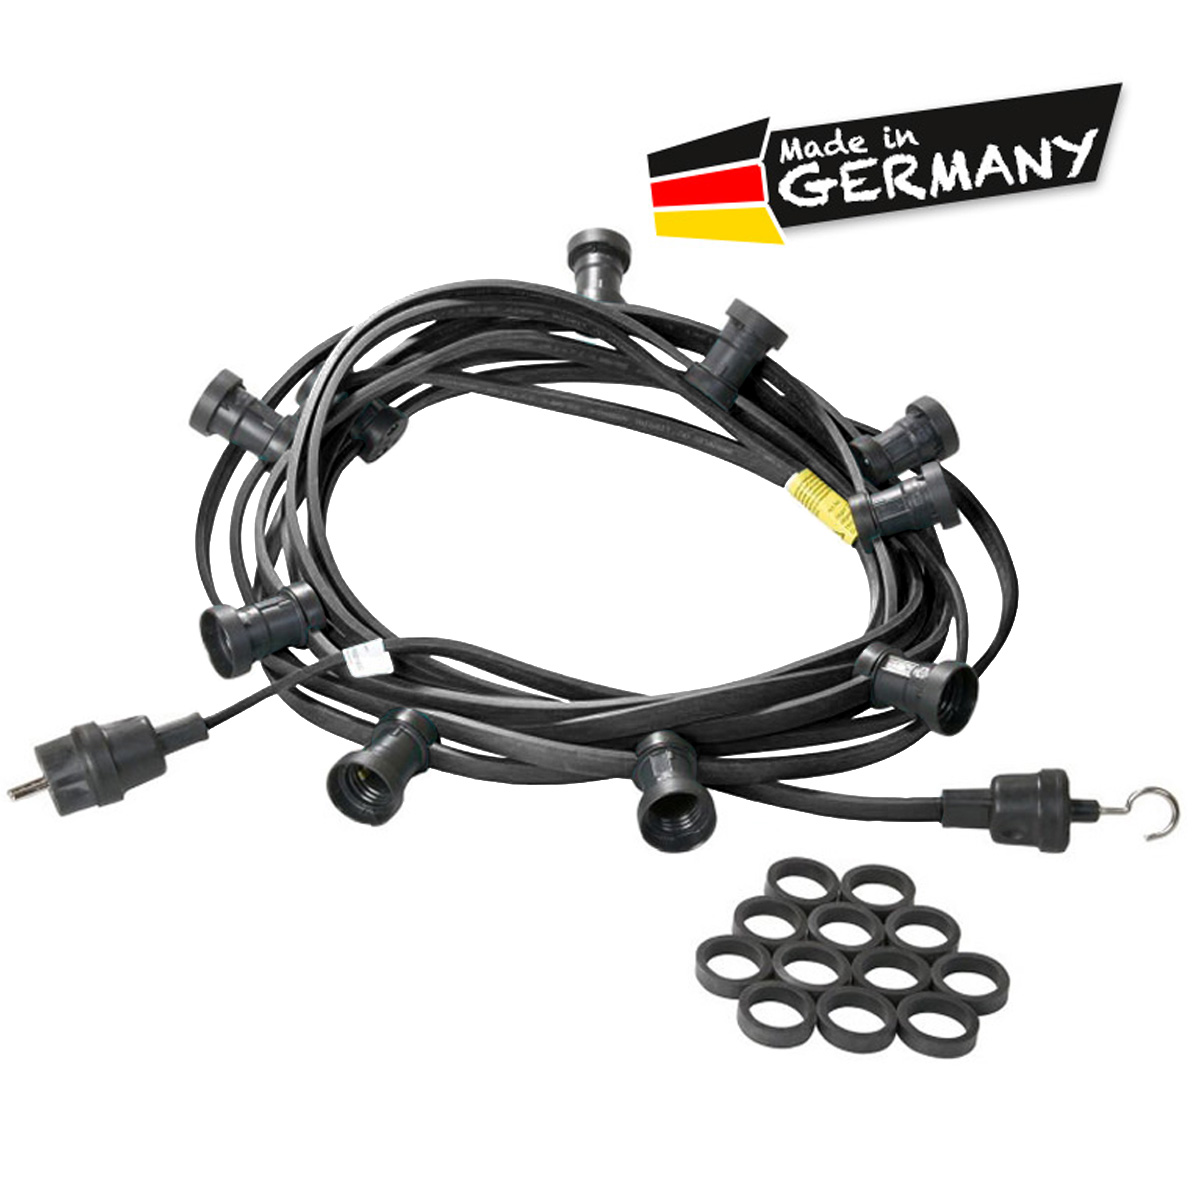 Illu-/Partylichterkette schwarz 50m | Außenlichterkette | Made in Germany | 50 x E27 Schraubfassung